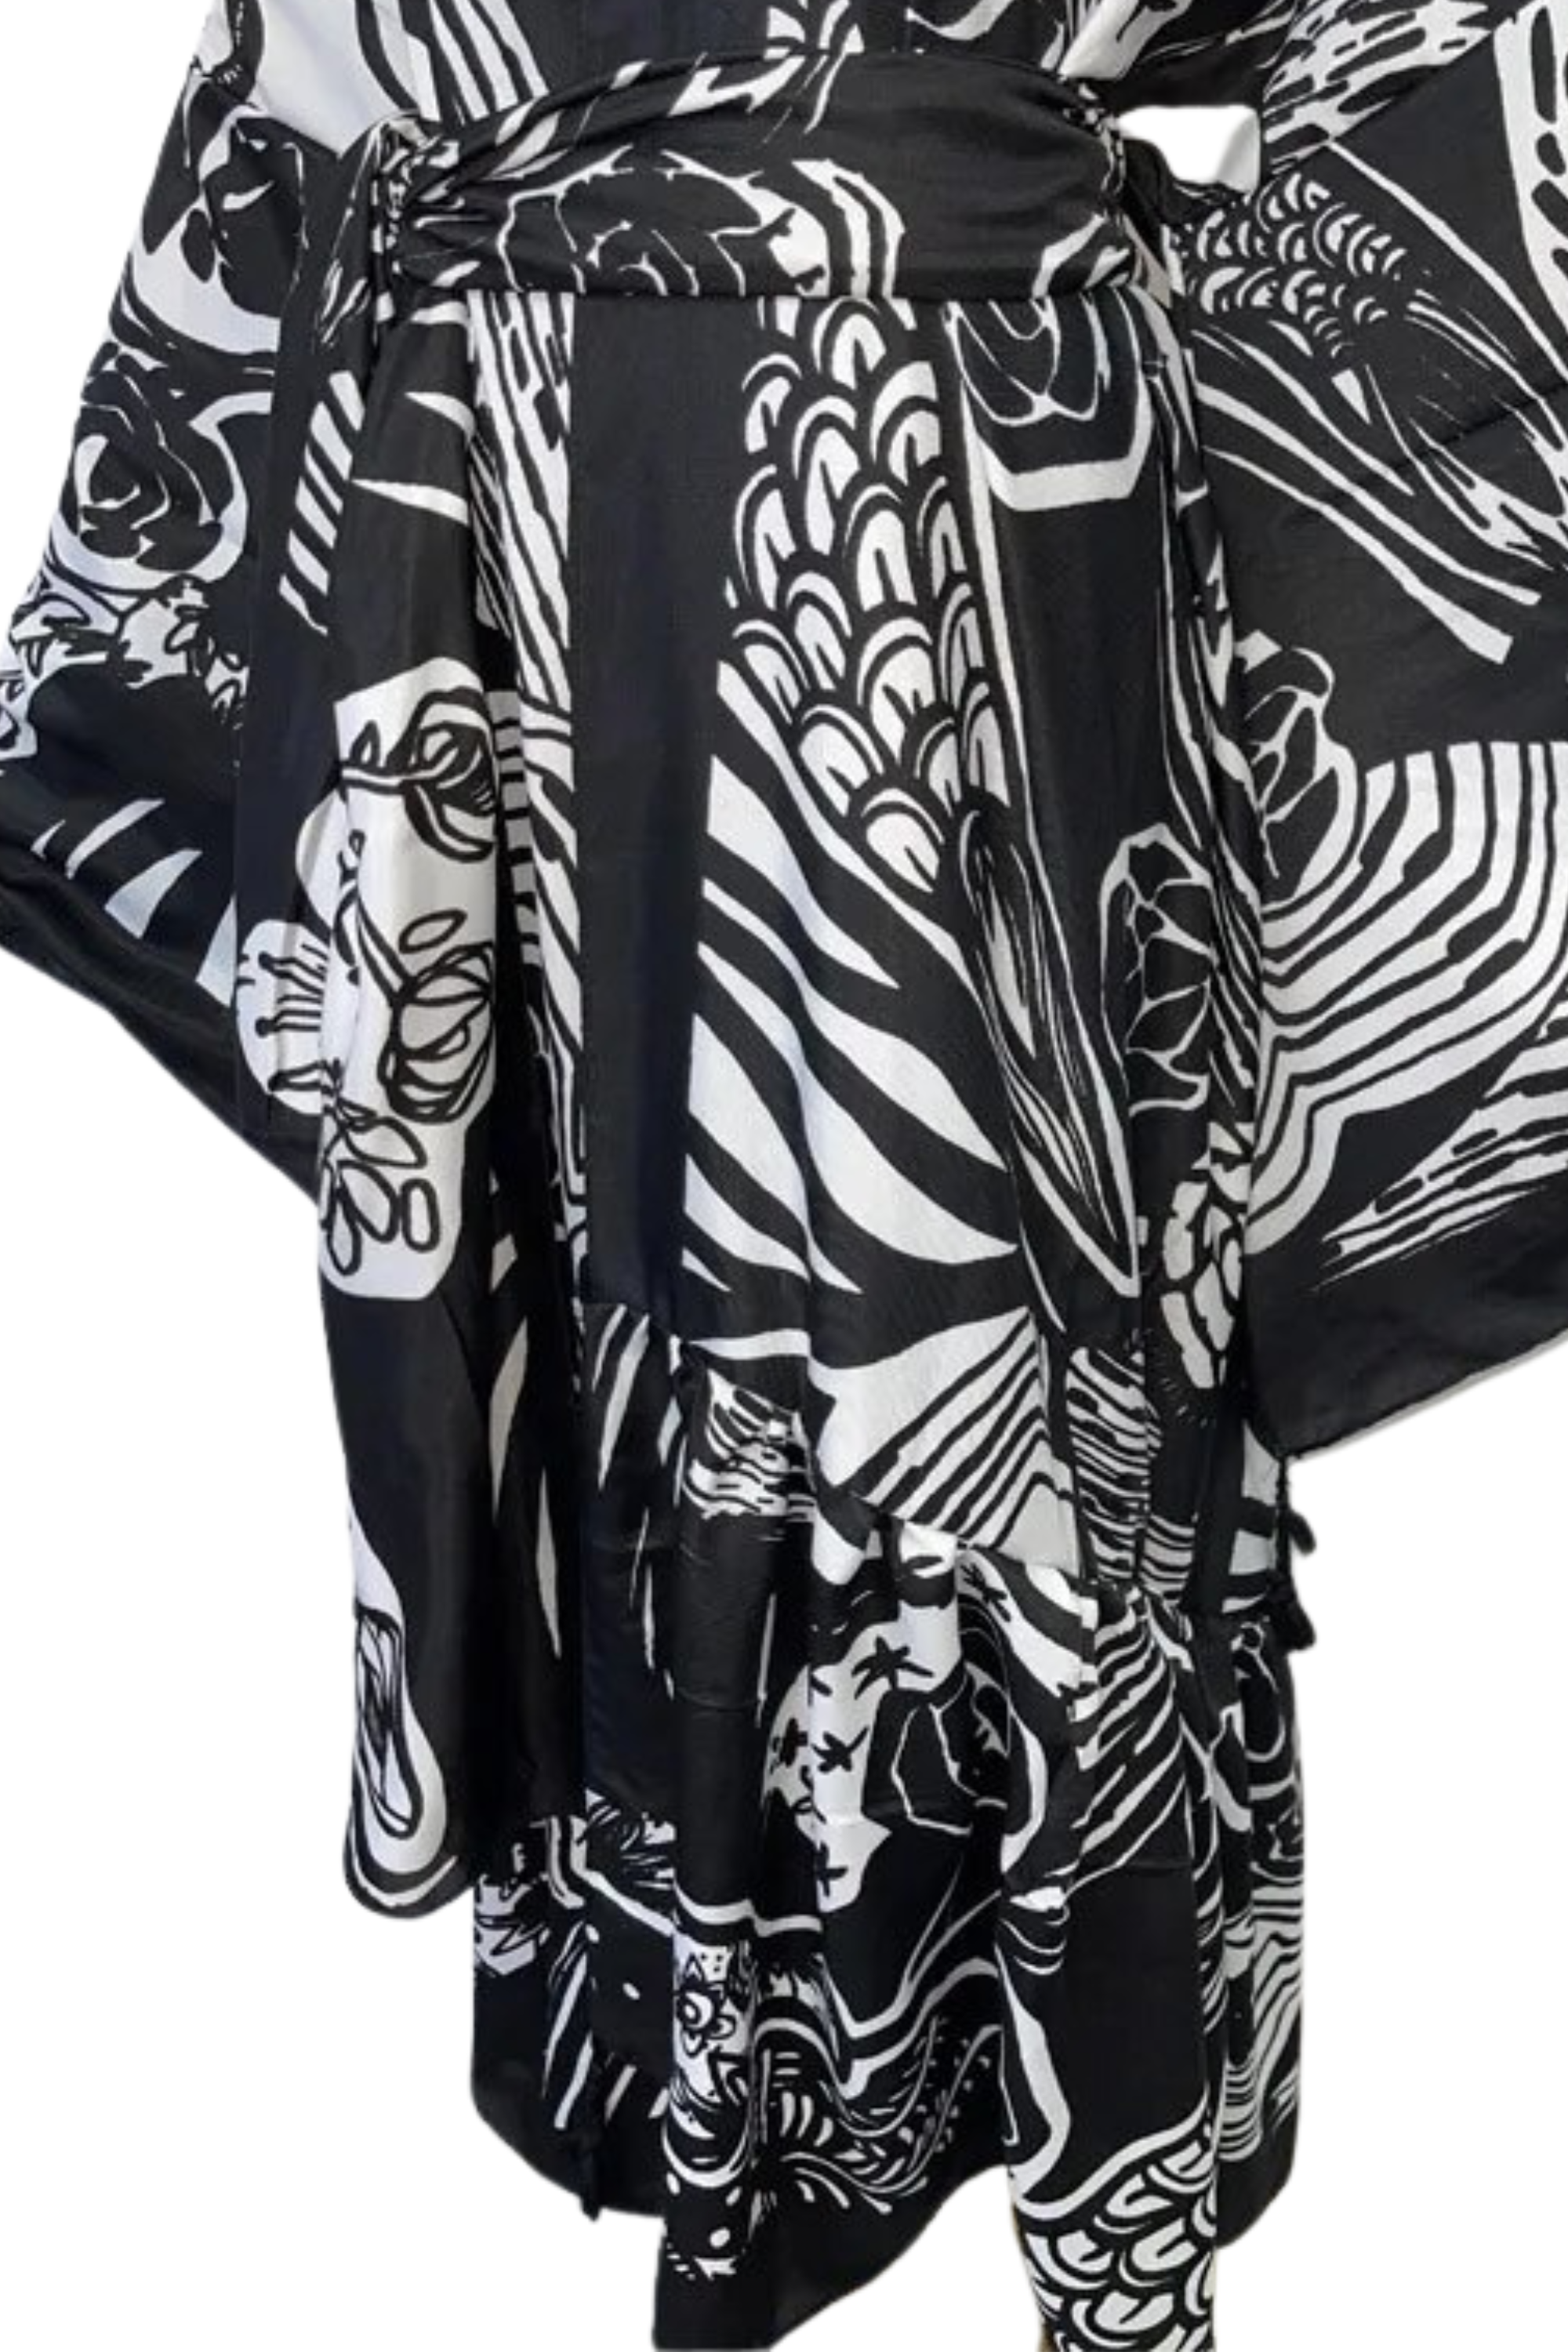 GOLDxTEAL black and white kimono dress.